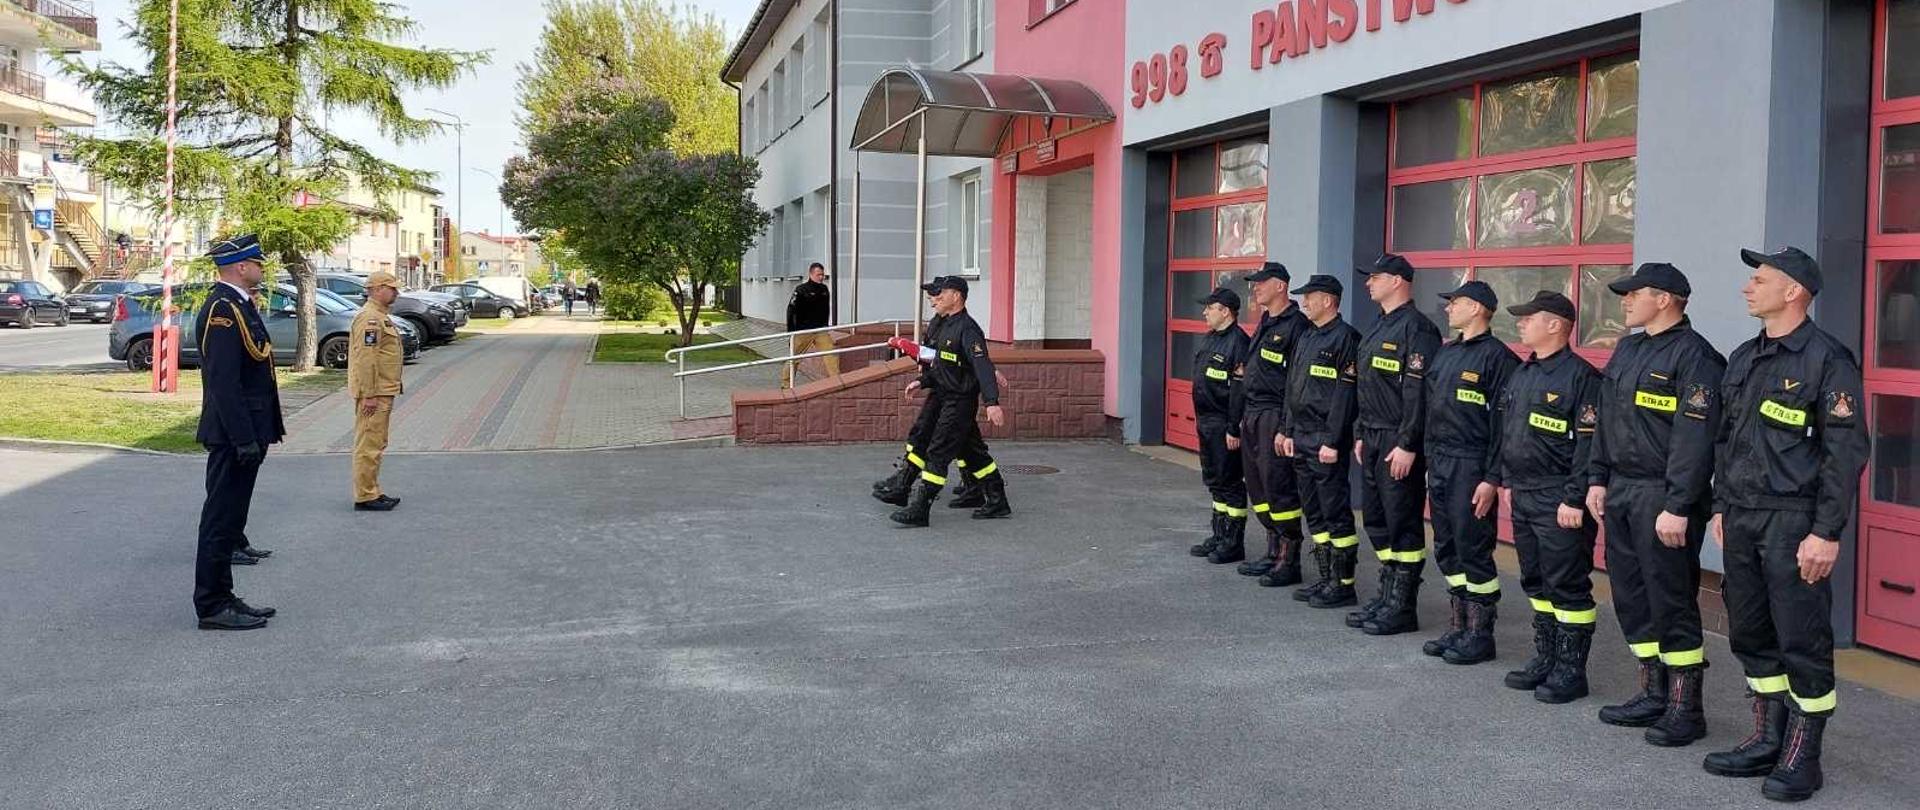 Przed budynkiem strażacy stoją na zbiórce